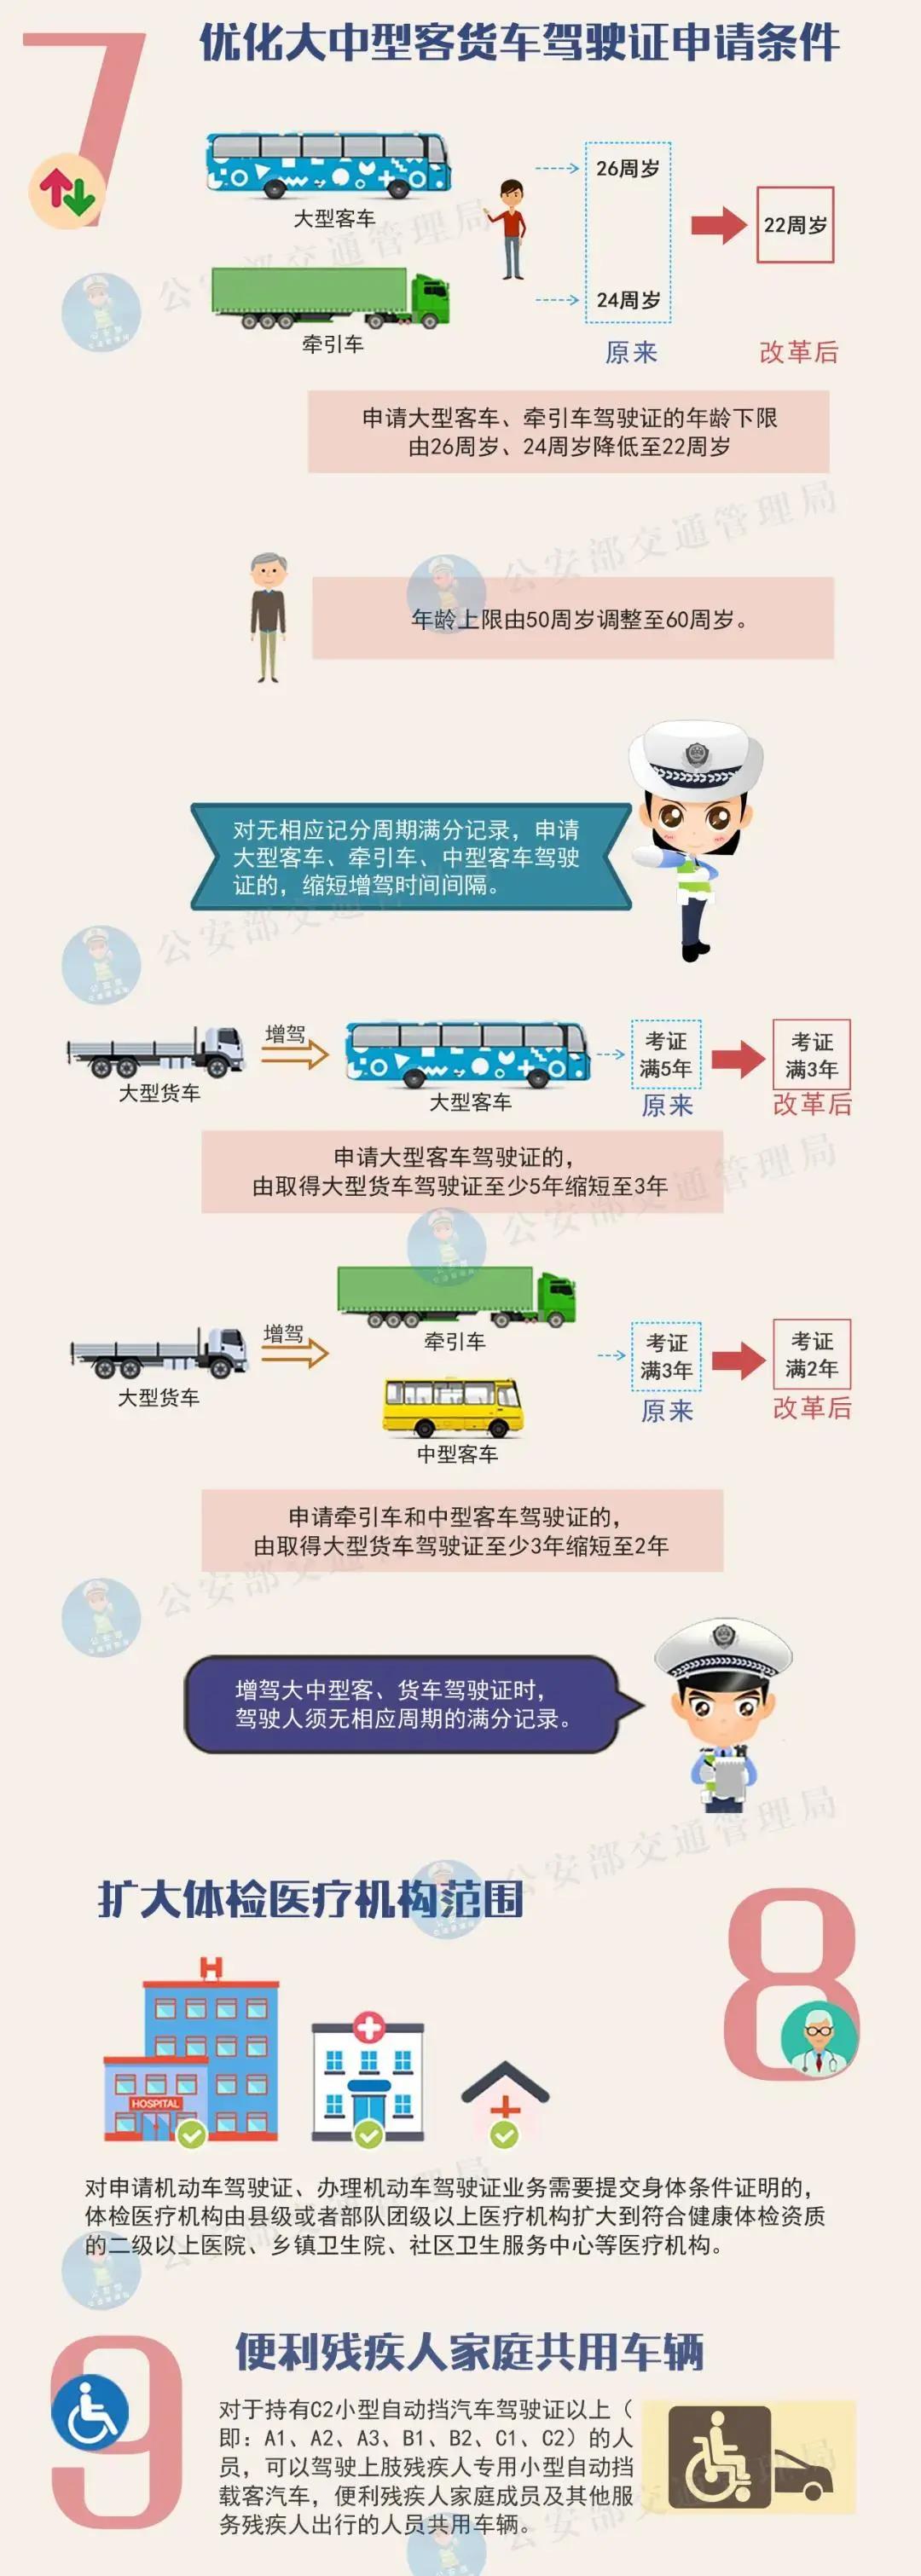 @汕头市民，驾照申请70周岁年龄上限即将取消，还有一大波惠民政策